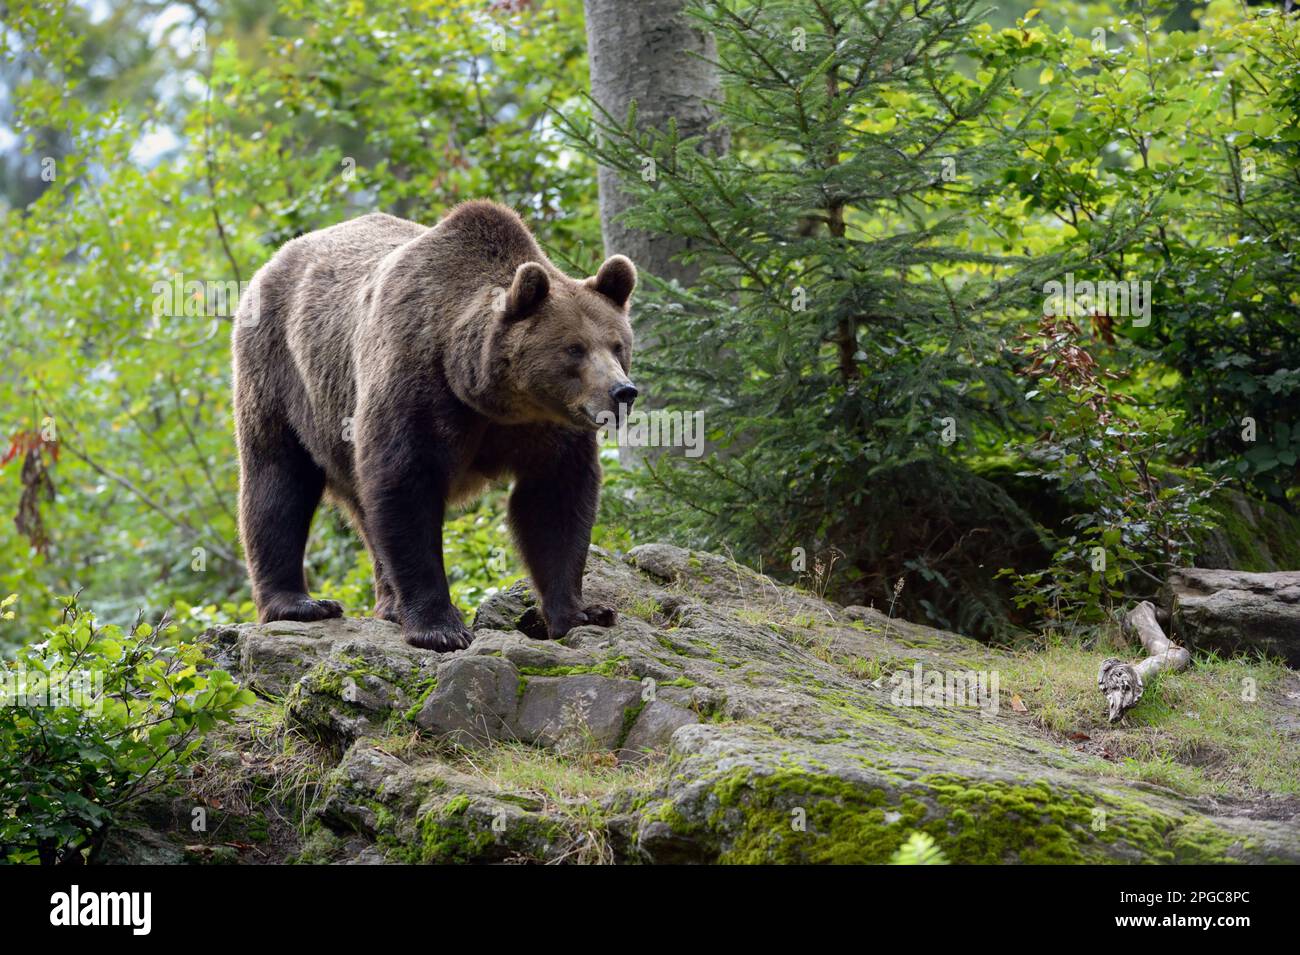 Orso bruno europeo, grandi specie di orso che si trovano in tutta l'Eurasia, animale massiccio e forte, in piedi su rocce in una foresta. Foto Stock